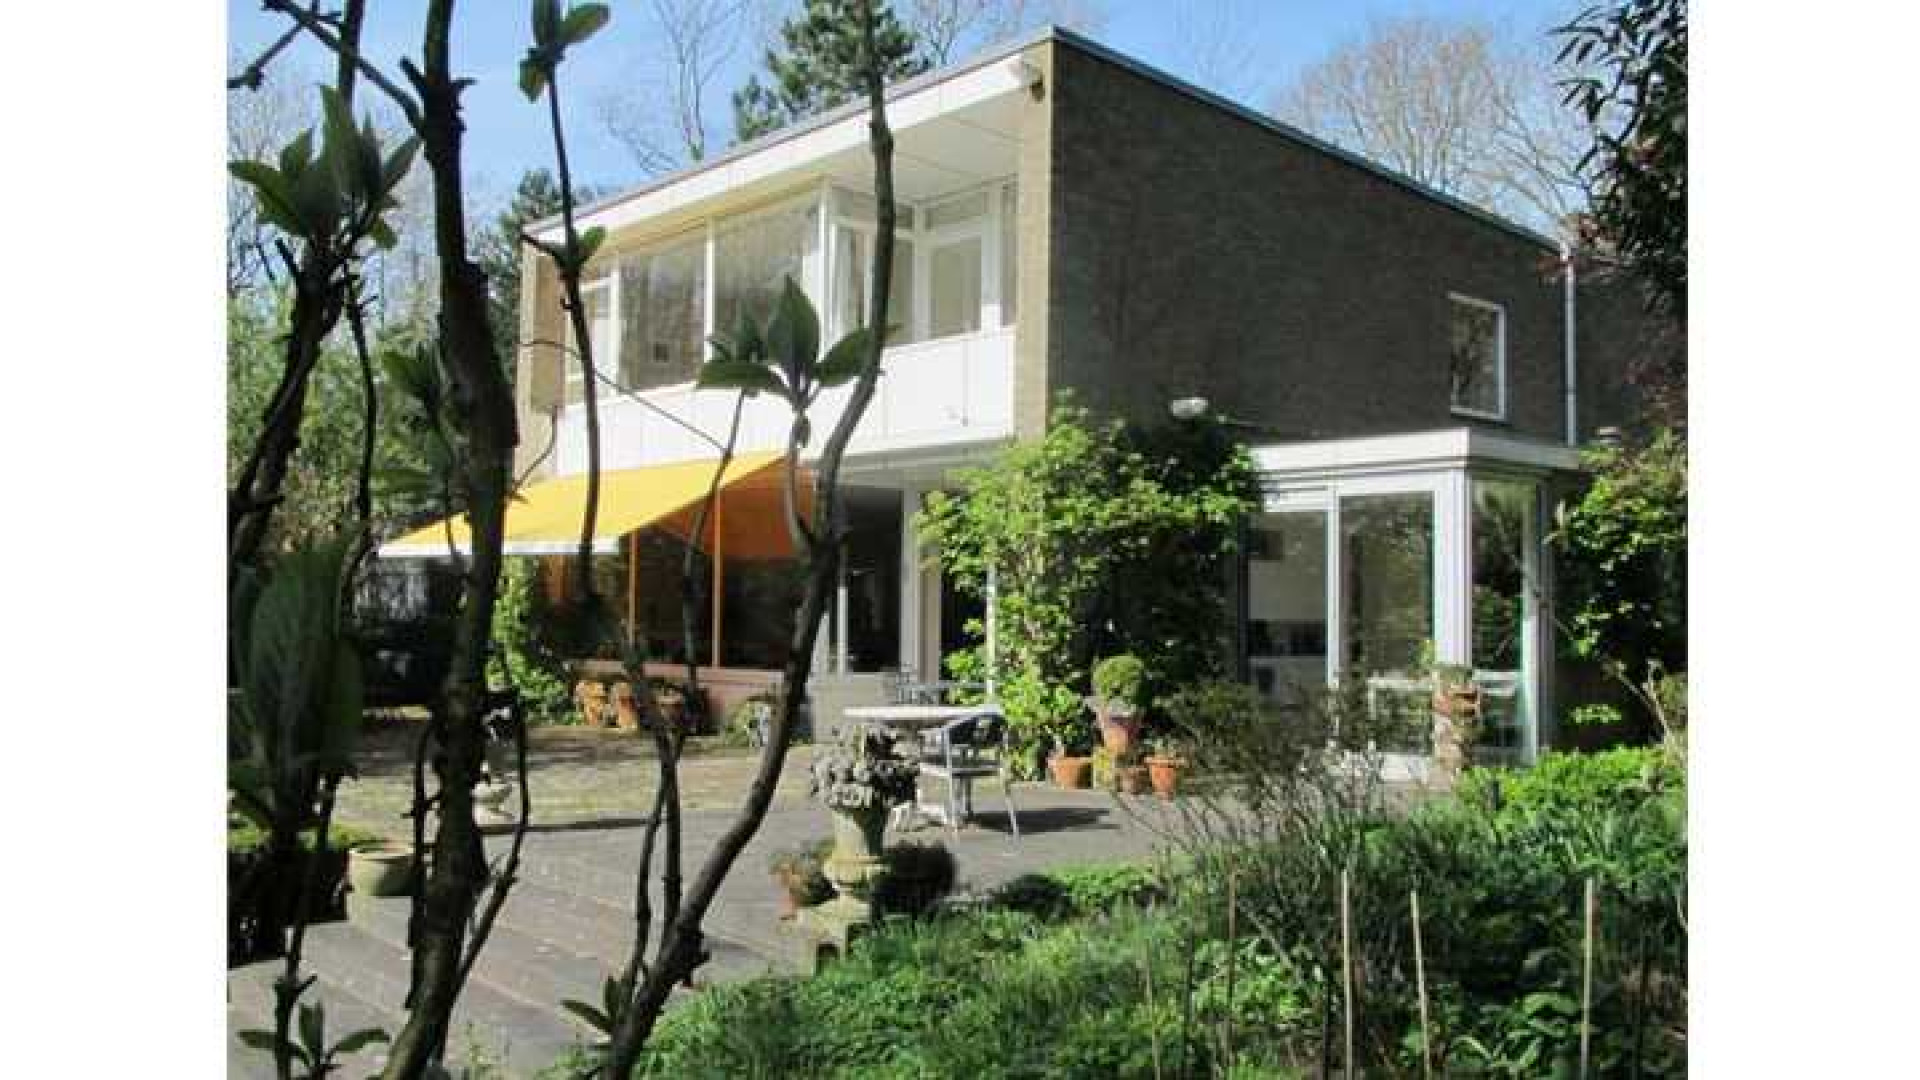 Wassenaarse villa van Neelie Smit Kroes eindelijk na jaren verkocht. Zie foto's 3